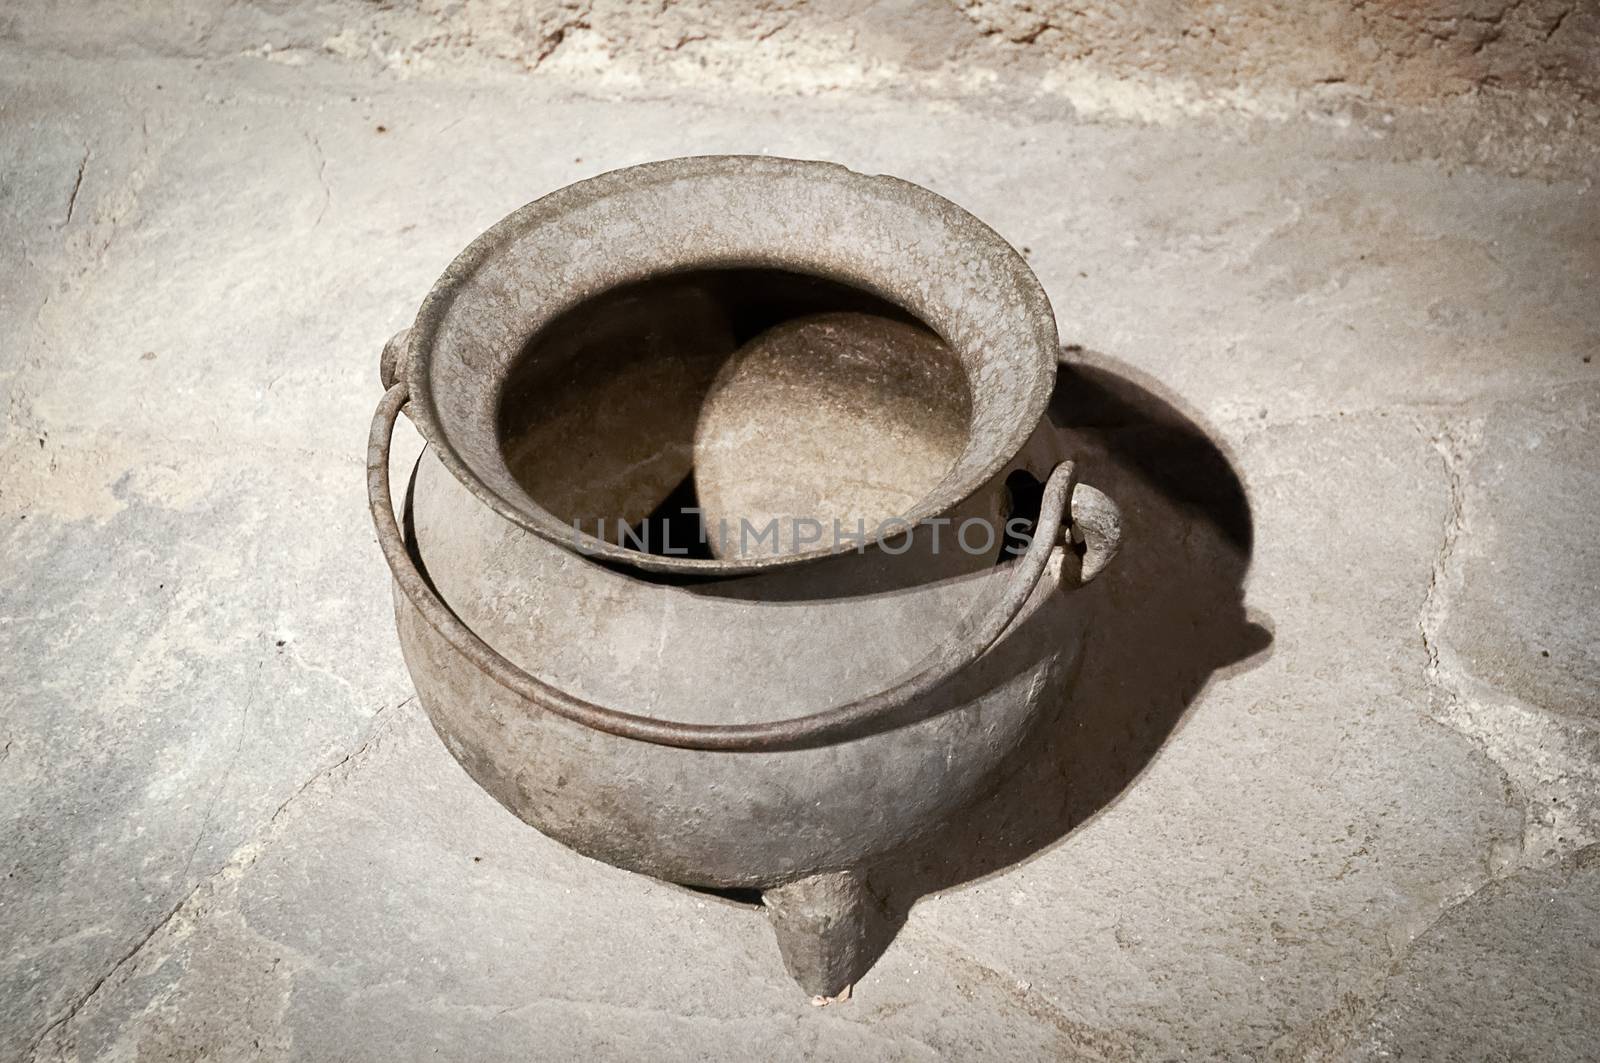 Antique iron pot. by LarisaP